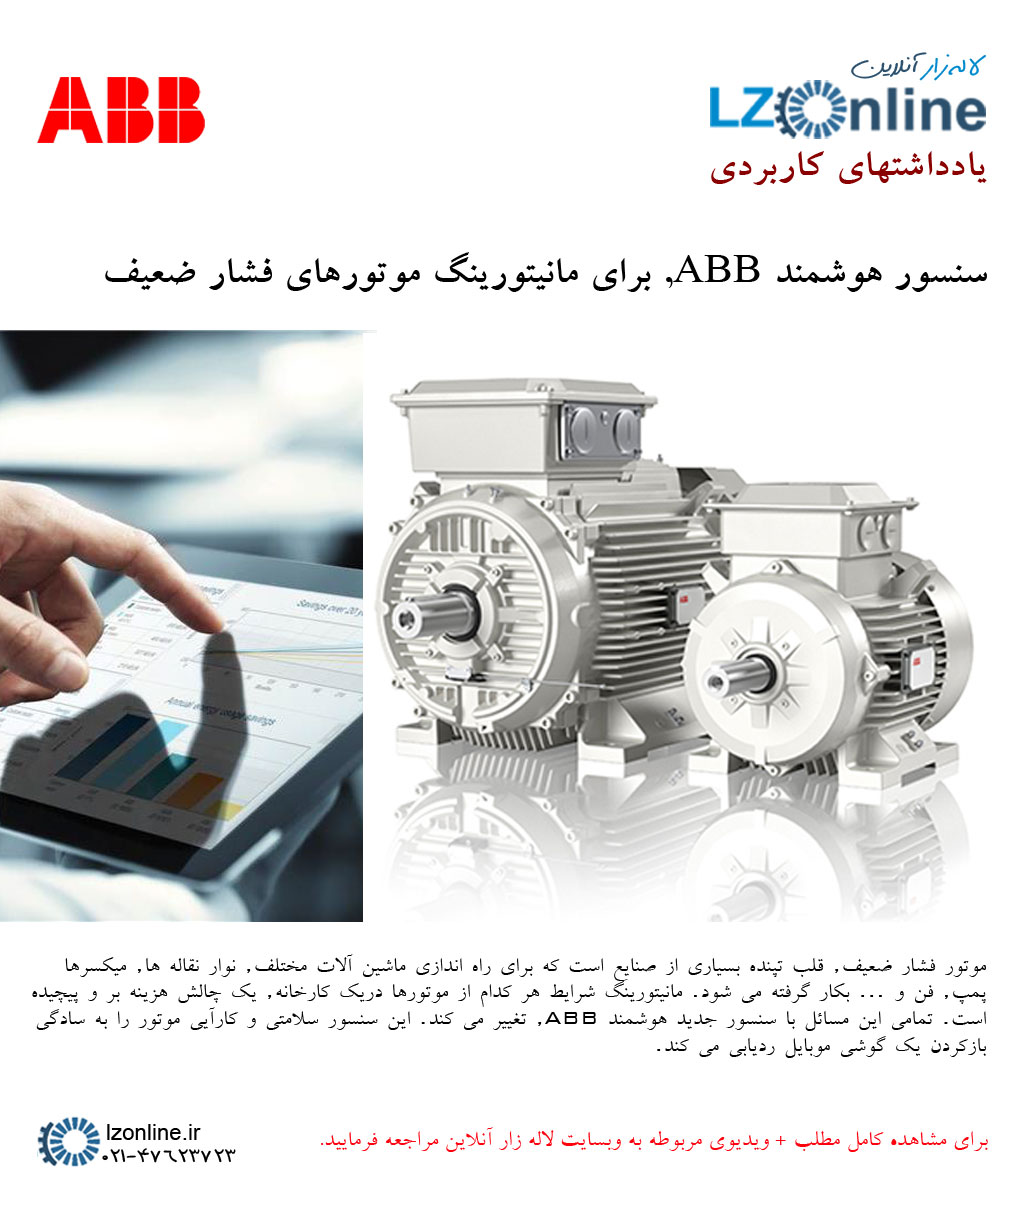 سنسور هوشمند ABB برای مانیتورینگ موتورهای فشار ضعیف